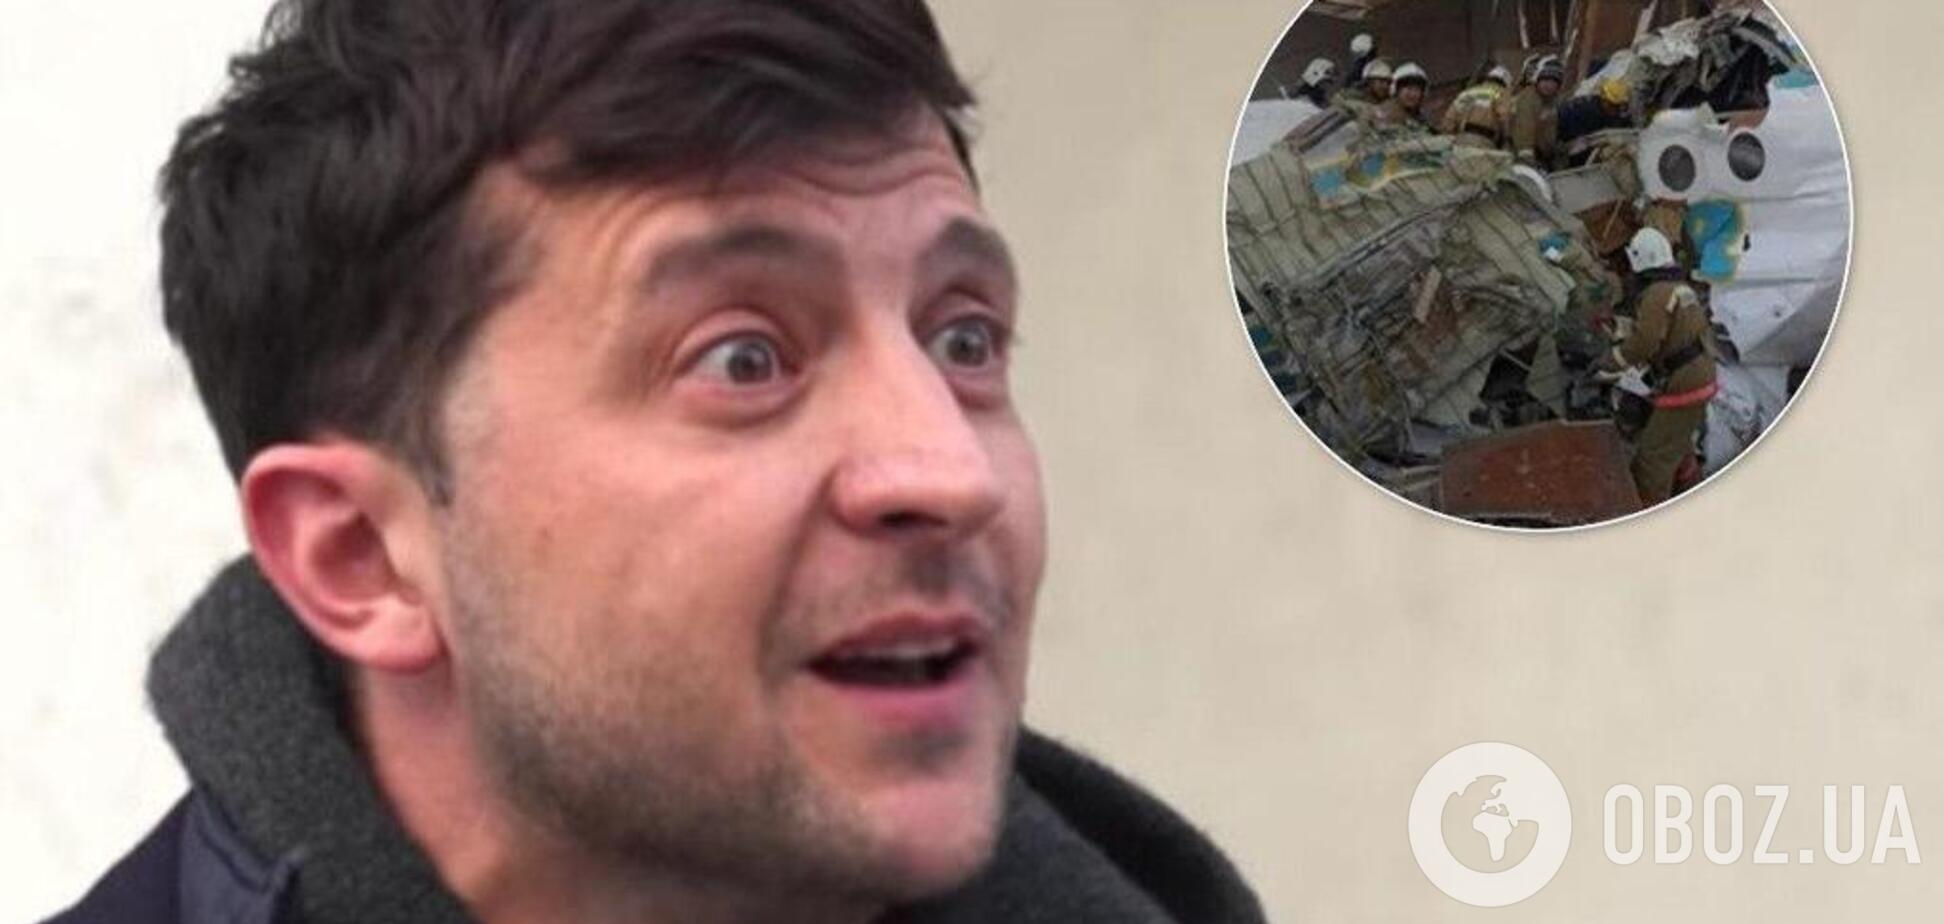 'Я гражданин Украины?' Выживший в авиакатастрофе мужчина обратился к Зеленскому